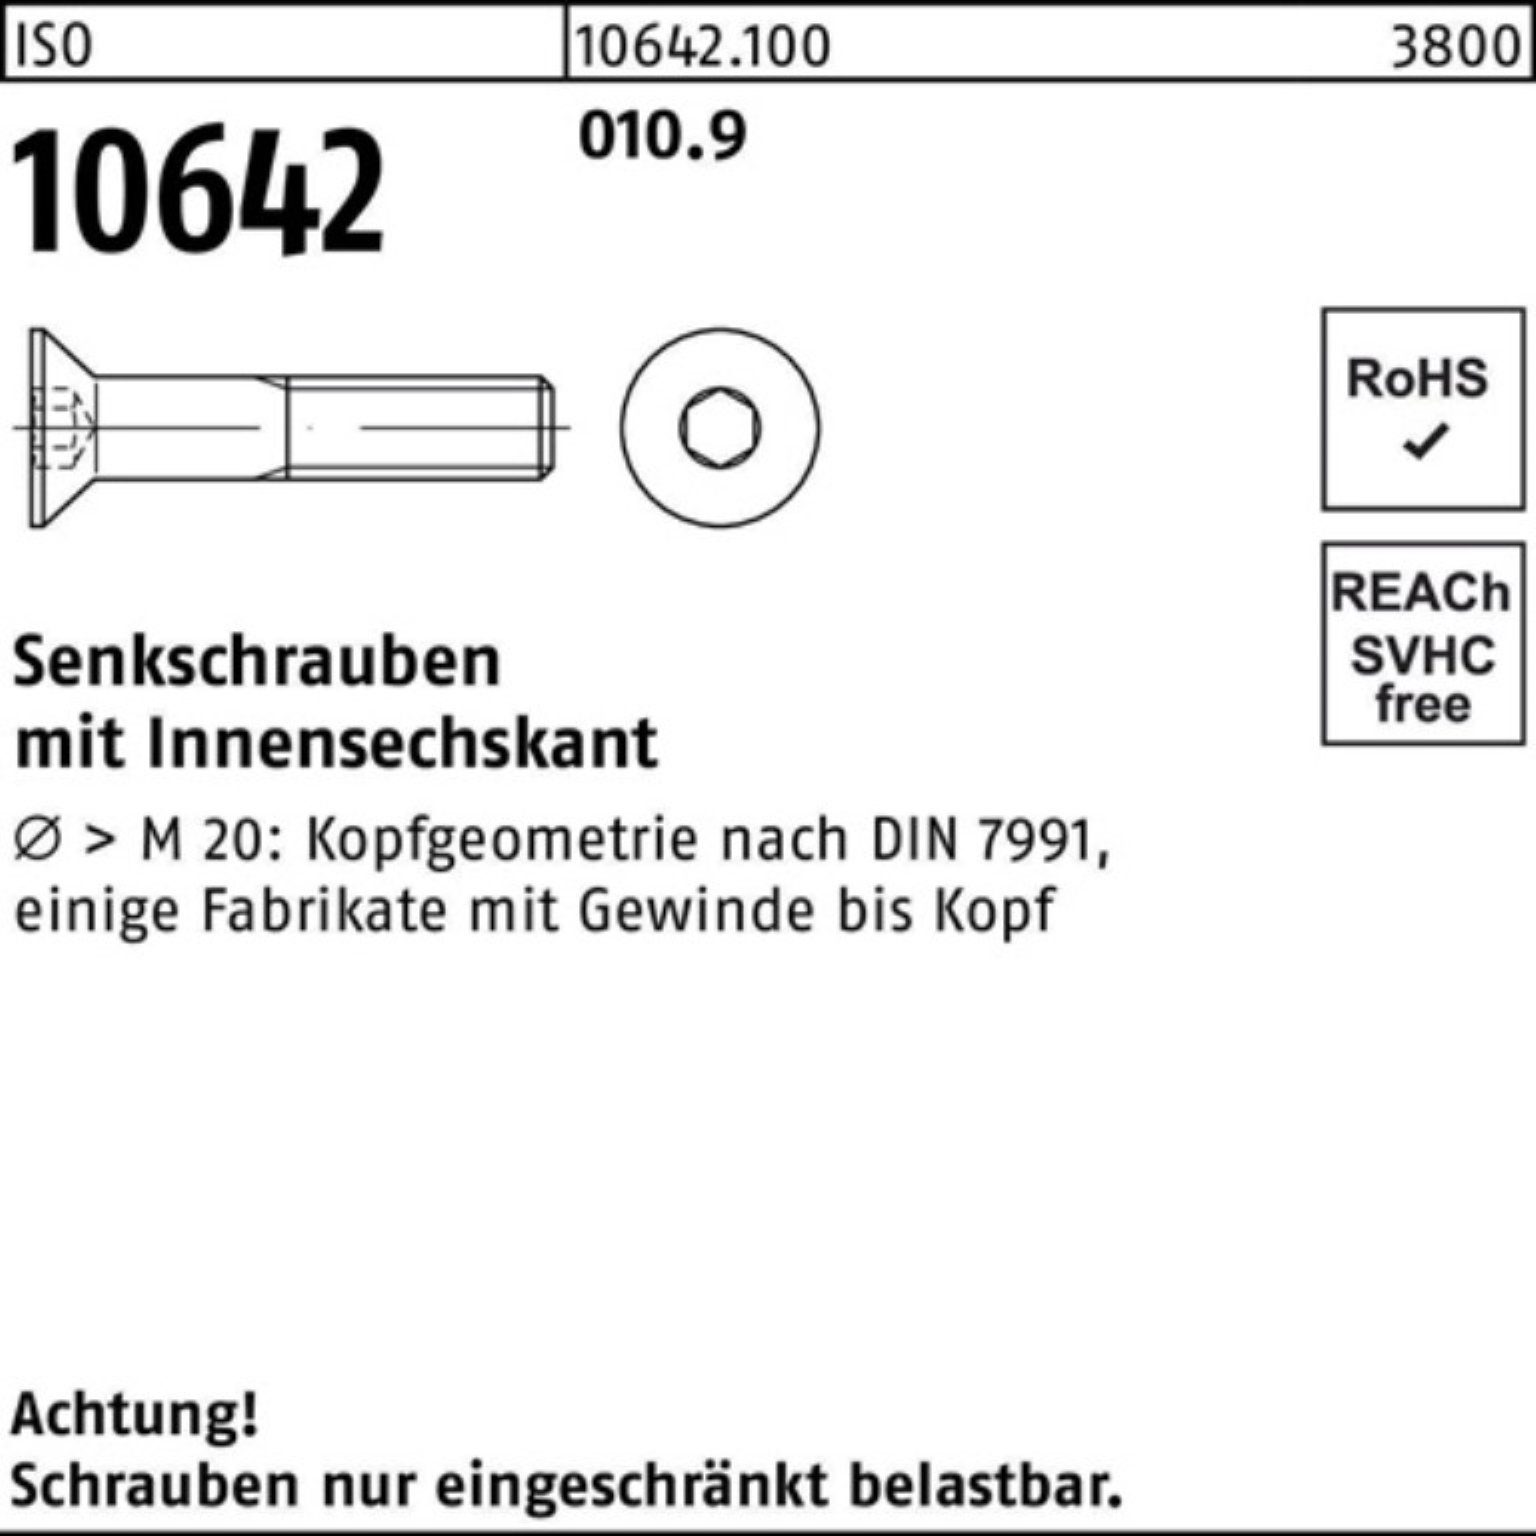 ISO Senkschraube 500er Senkschraube Pack Stück 500 Innen-6kt 10642 010.9 ISO Reyher 8 M5x